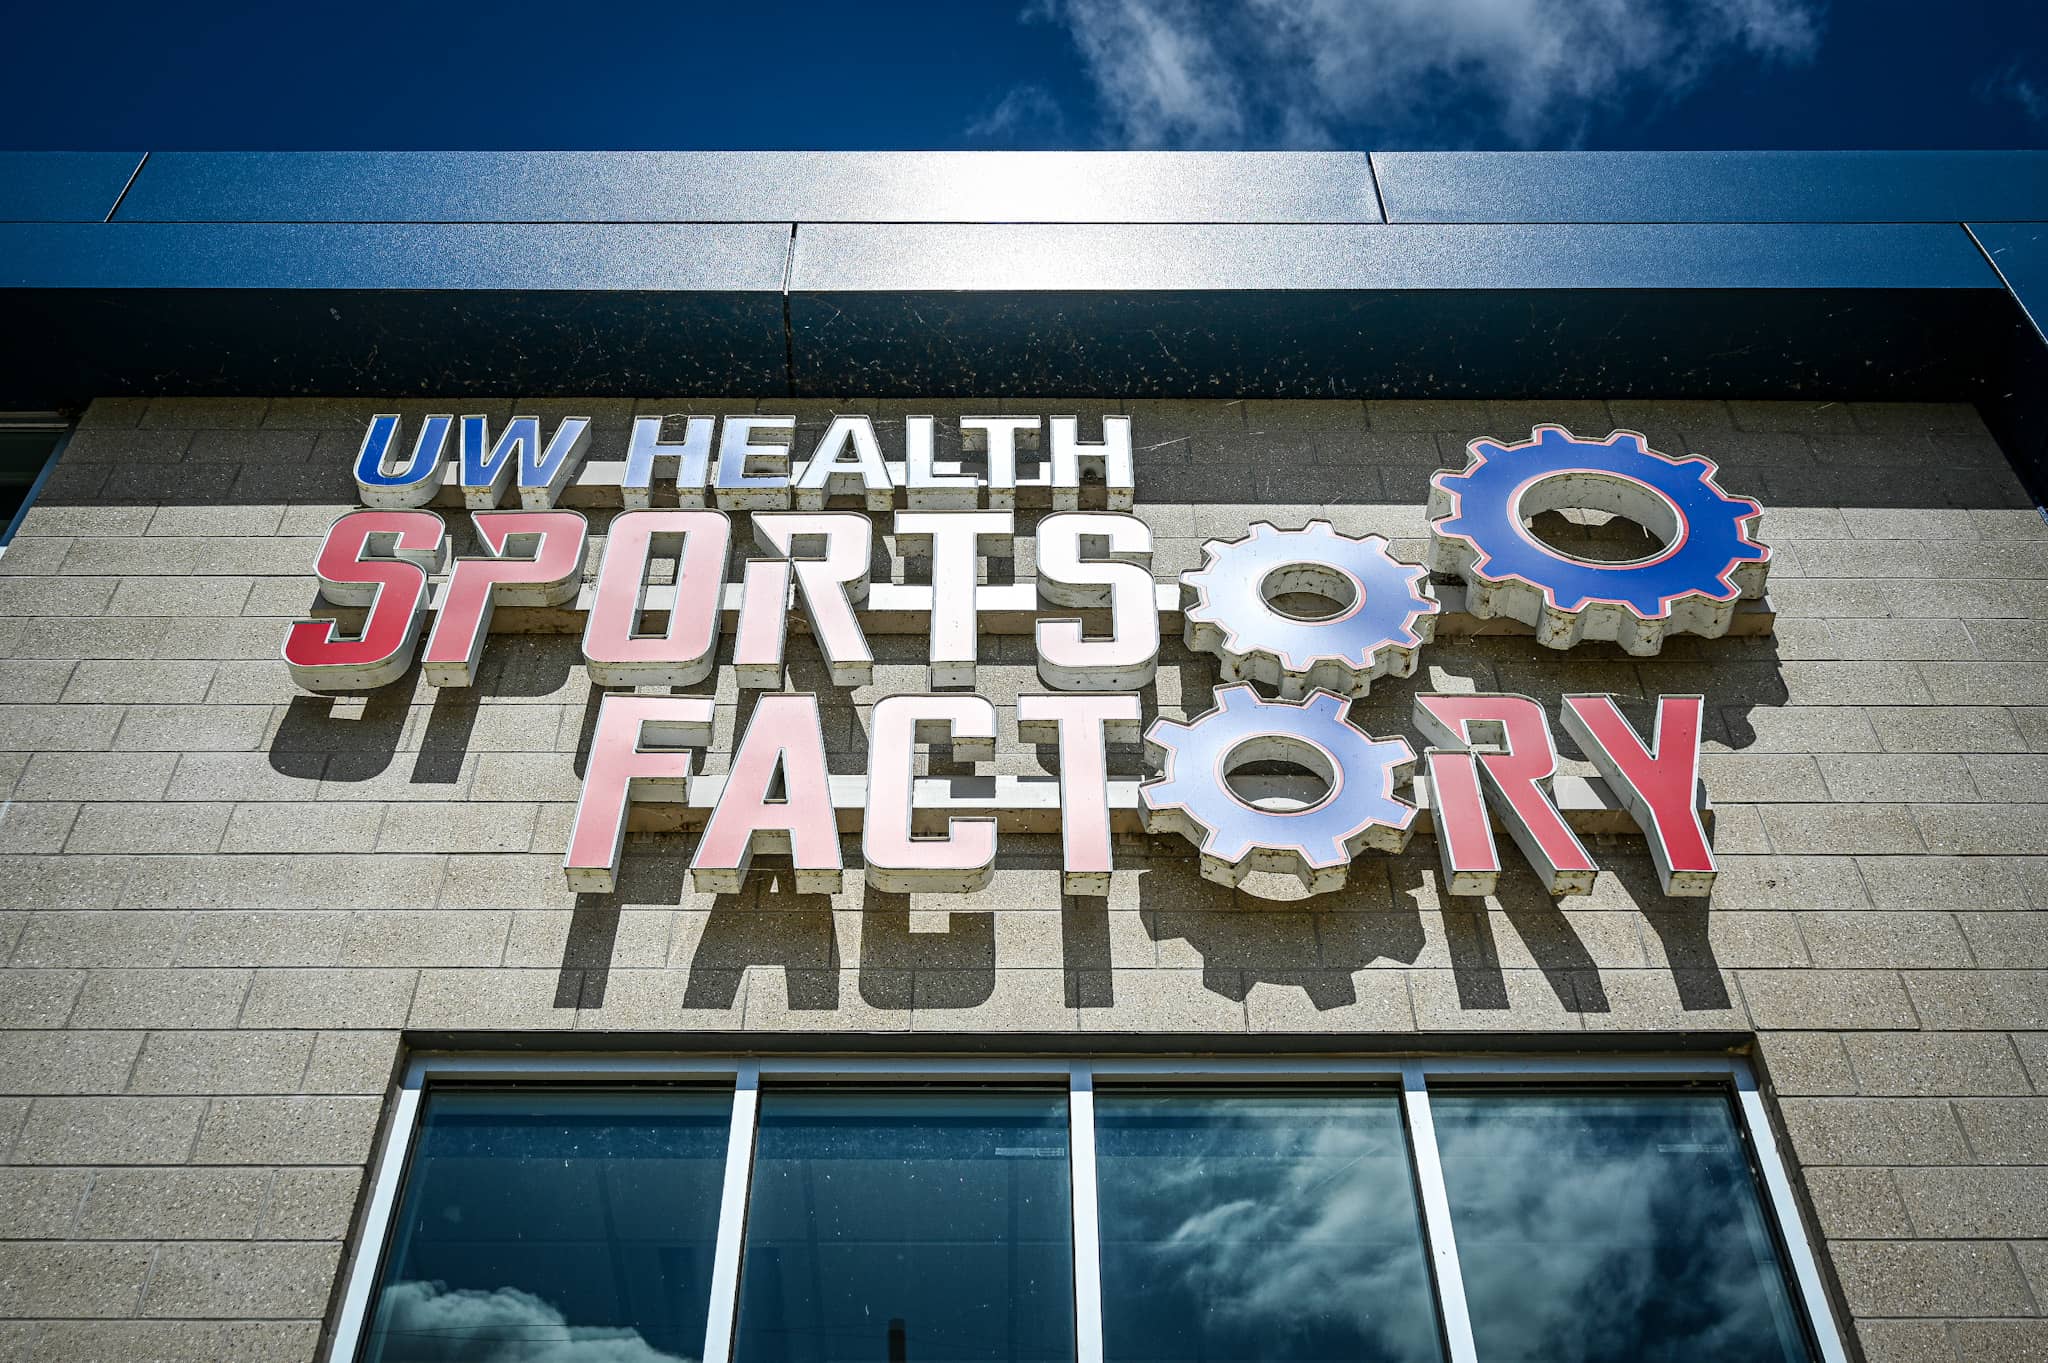 Big Hoop — UW Health Sports Factory